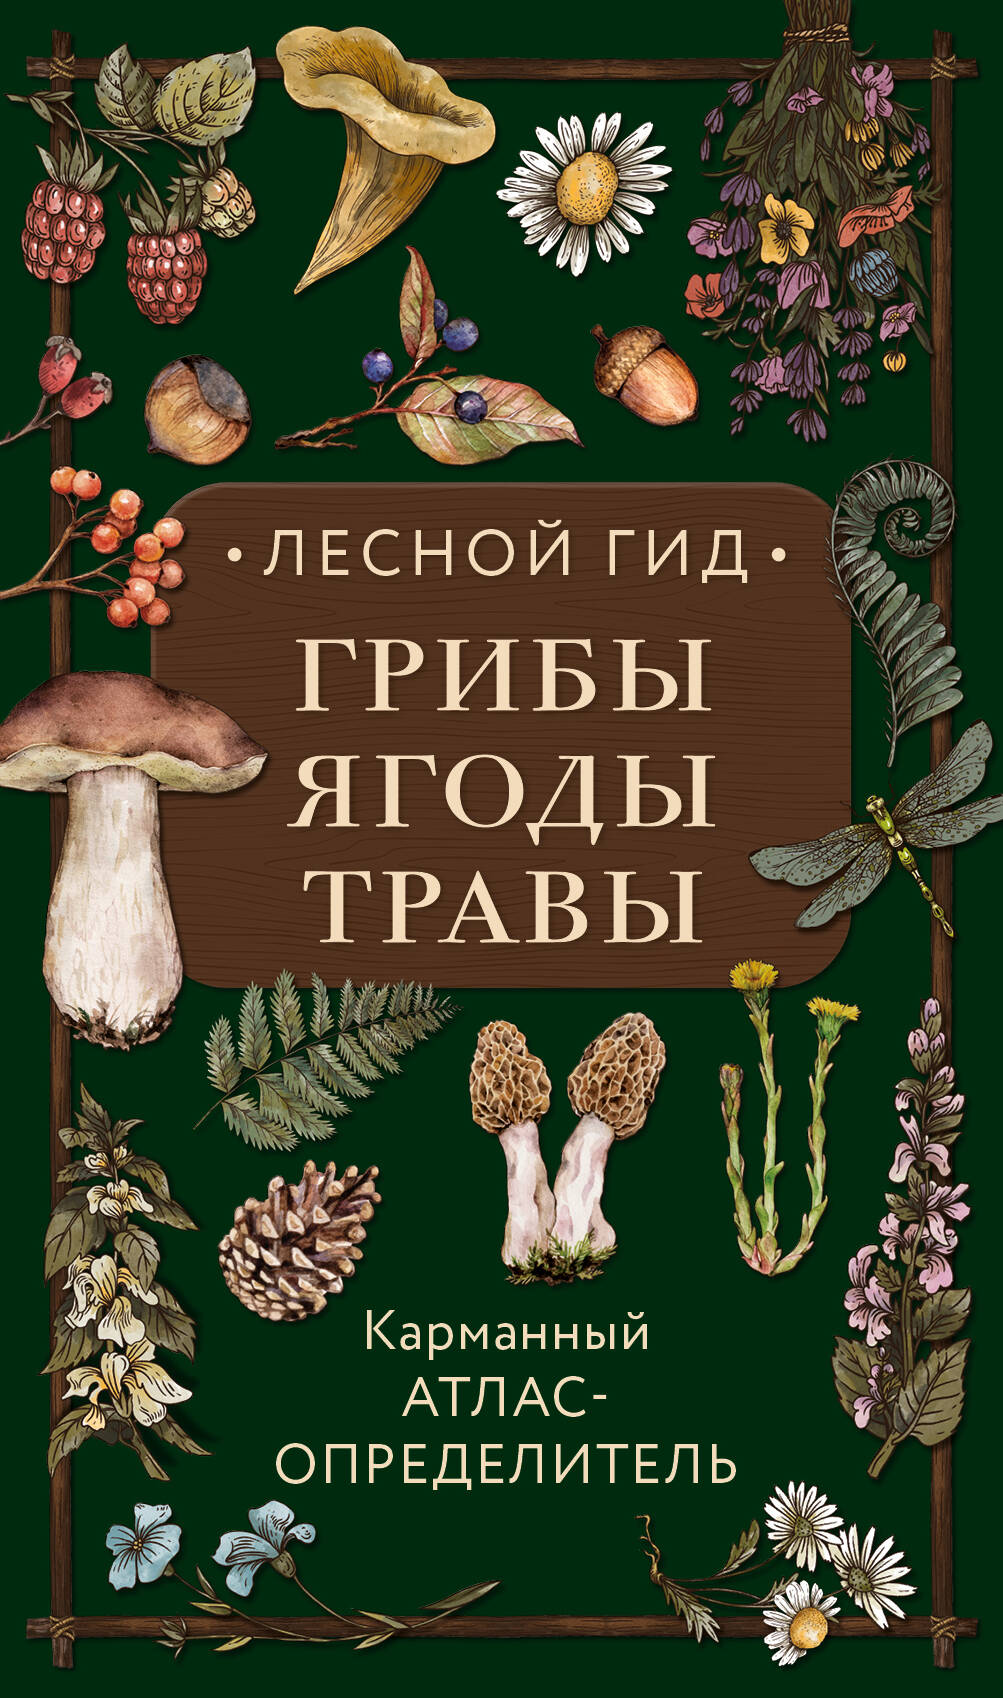 Лесной гид: грибы, ягоды, травы. Карманный атлас-определитель людмила семенова лесной гид грибы ягоды травы